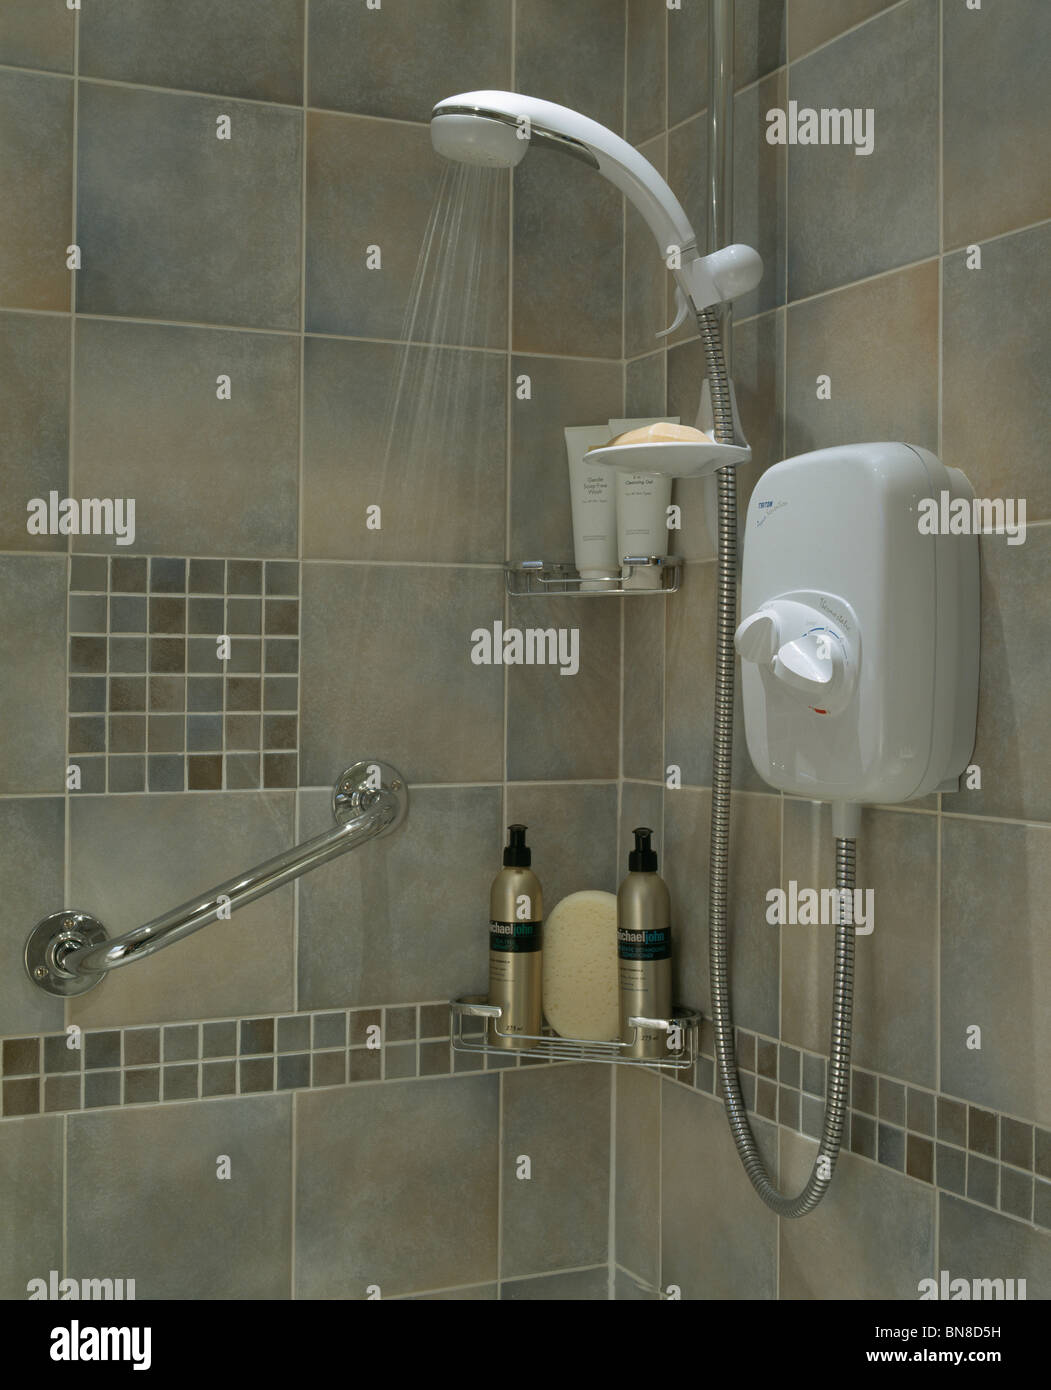 Nahaufnahme der Dusche mit Wasser gießen aus elektrischen Duschkopf  Stockfotografie - Alamy